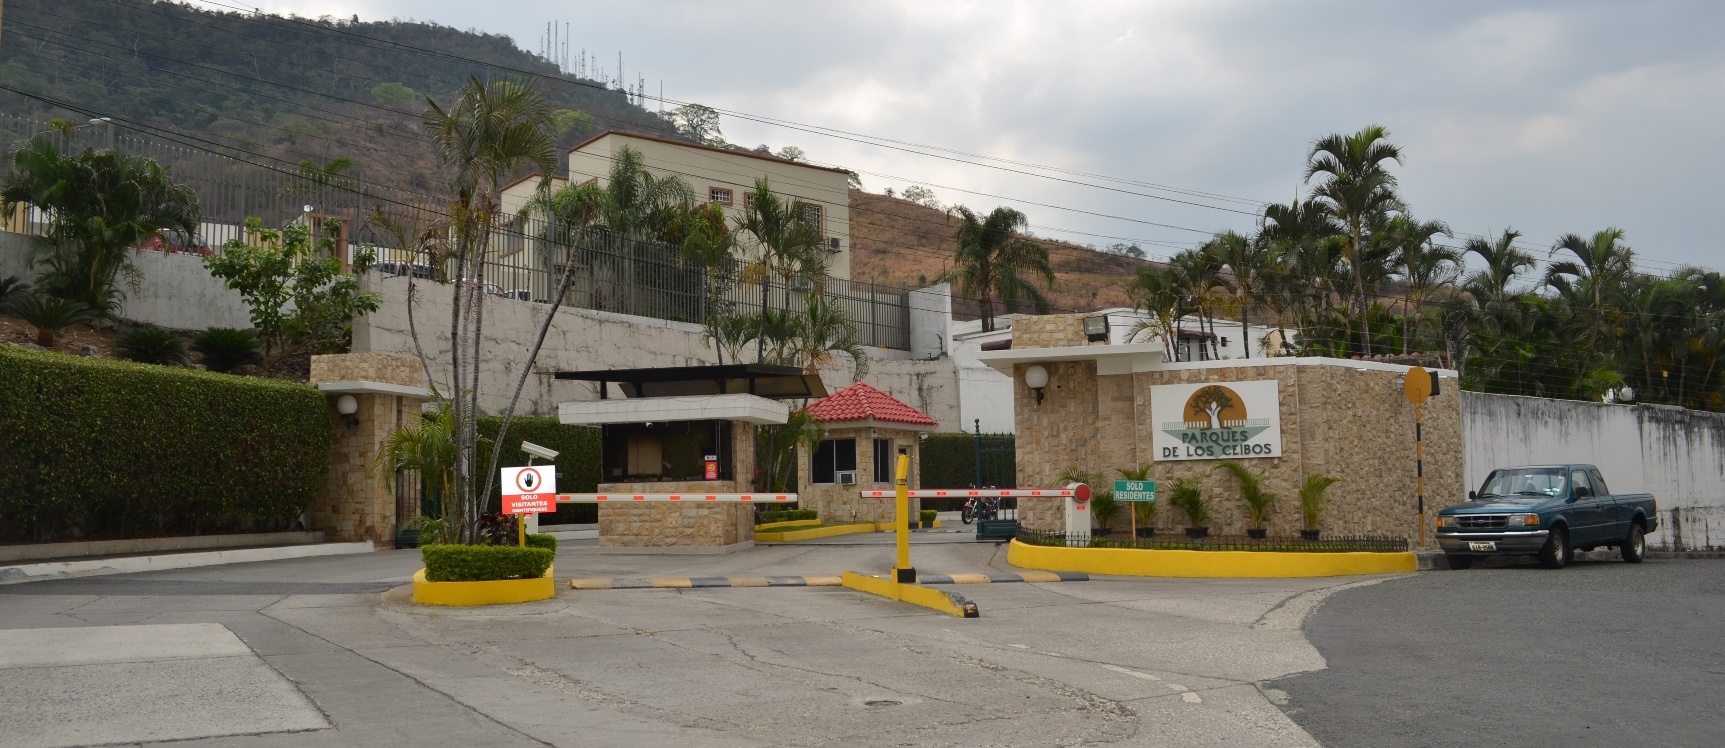 GeoBienes - Departamento en alquiler en Urbanización Parque de los Ceibos sector Ceibos - Plusvalia Guayaquil Casas de venta y alquiler Inmobiliaria Ecuador